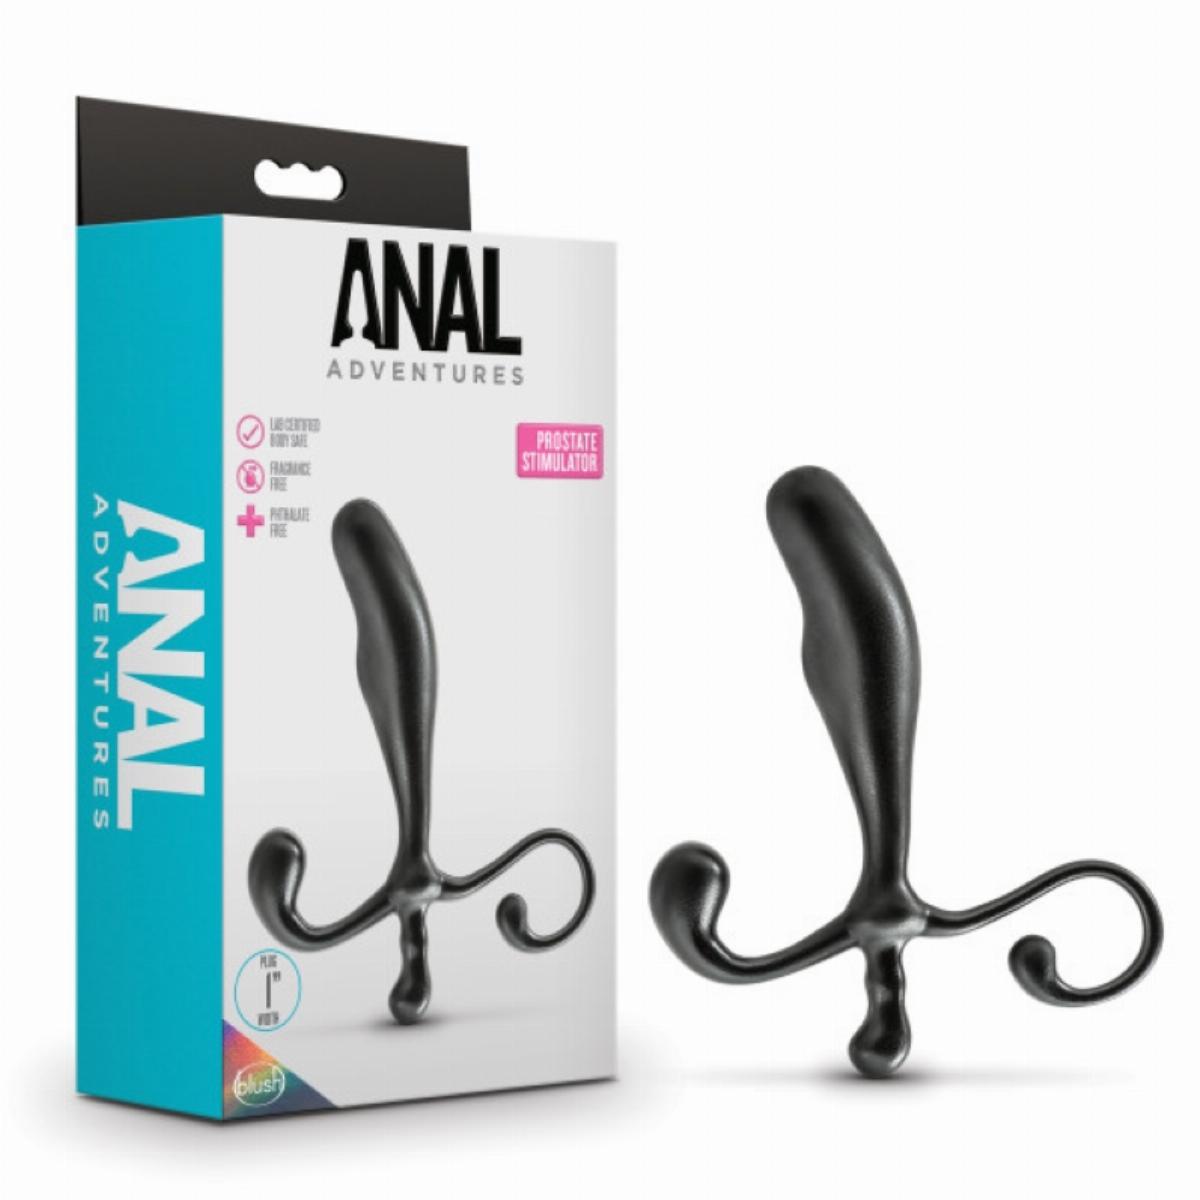 Anal Adventures - Prostaat Stimulator - Zwart